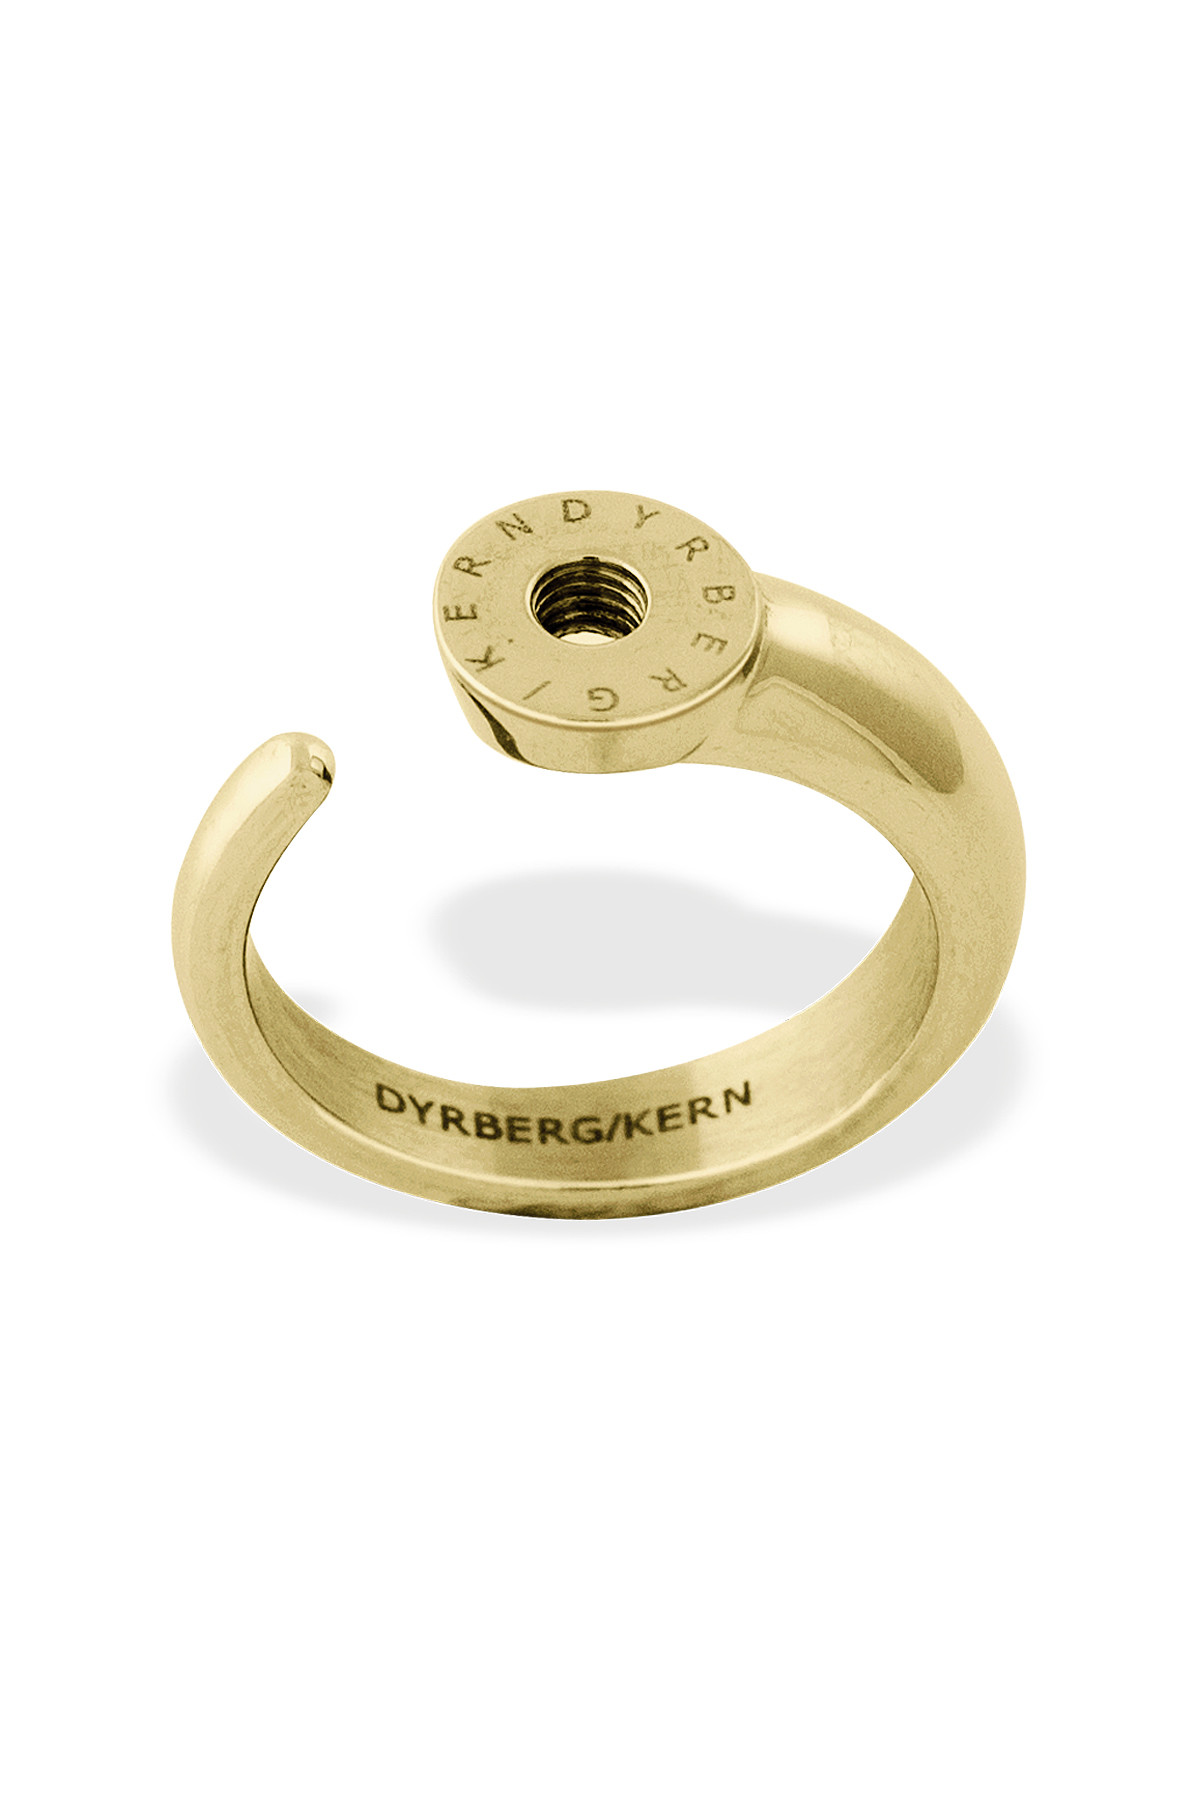 Billede af Dyrberg/kern Ring Ring, Farve: Guld, Størrelse: IIIII/63, Dame